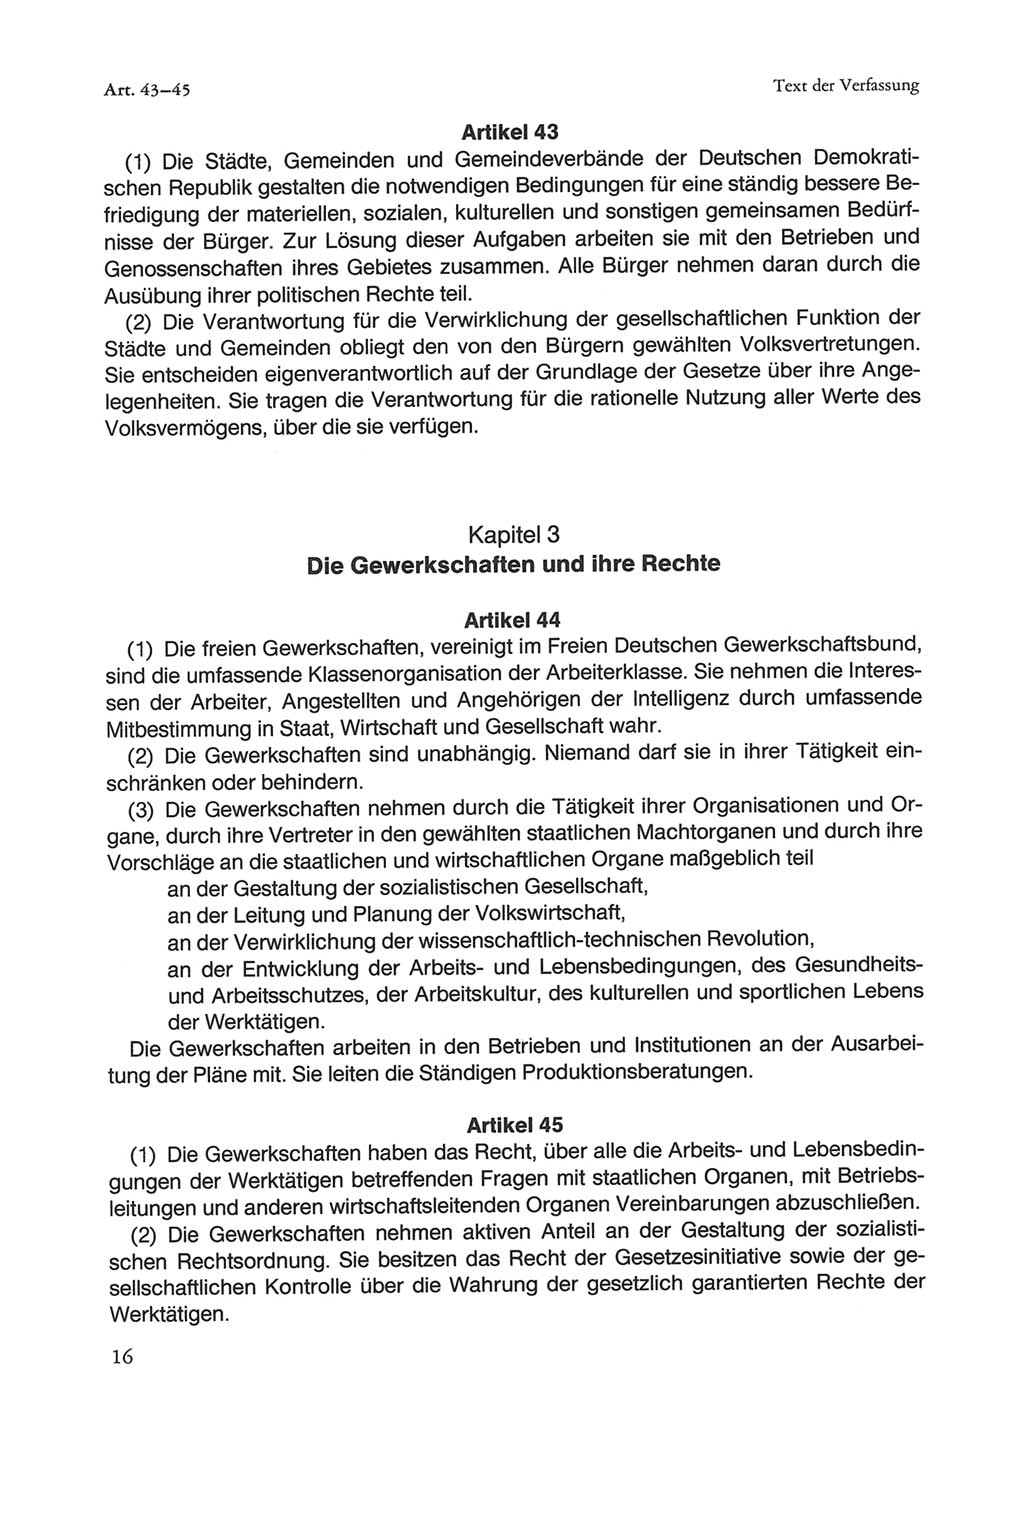 Die sozialistische Verfassung der Deutschen Demokratischen Republik (DDR), Kommentar 1982, Seite 16 (Soz. Verf. DDR Komm. 1982, S. 16)